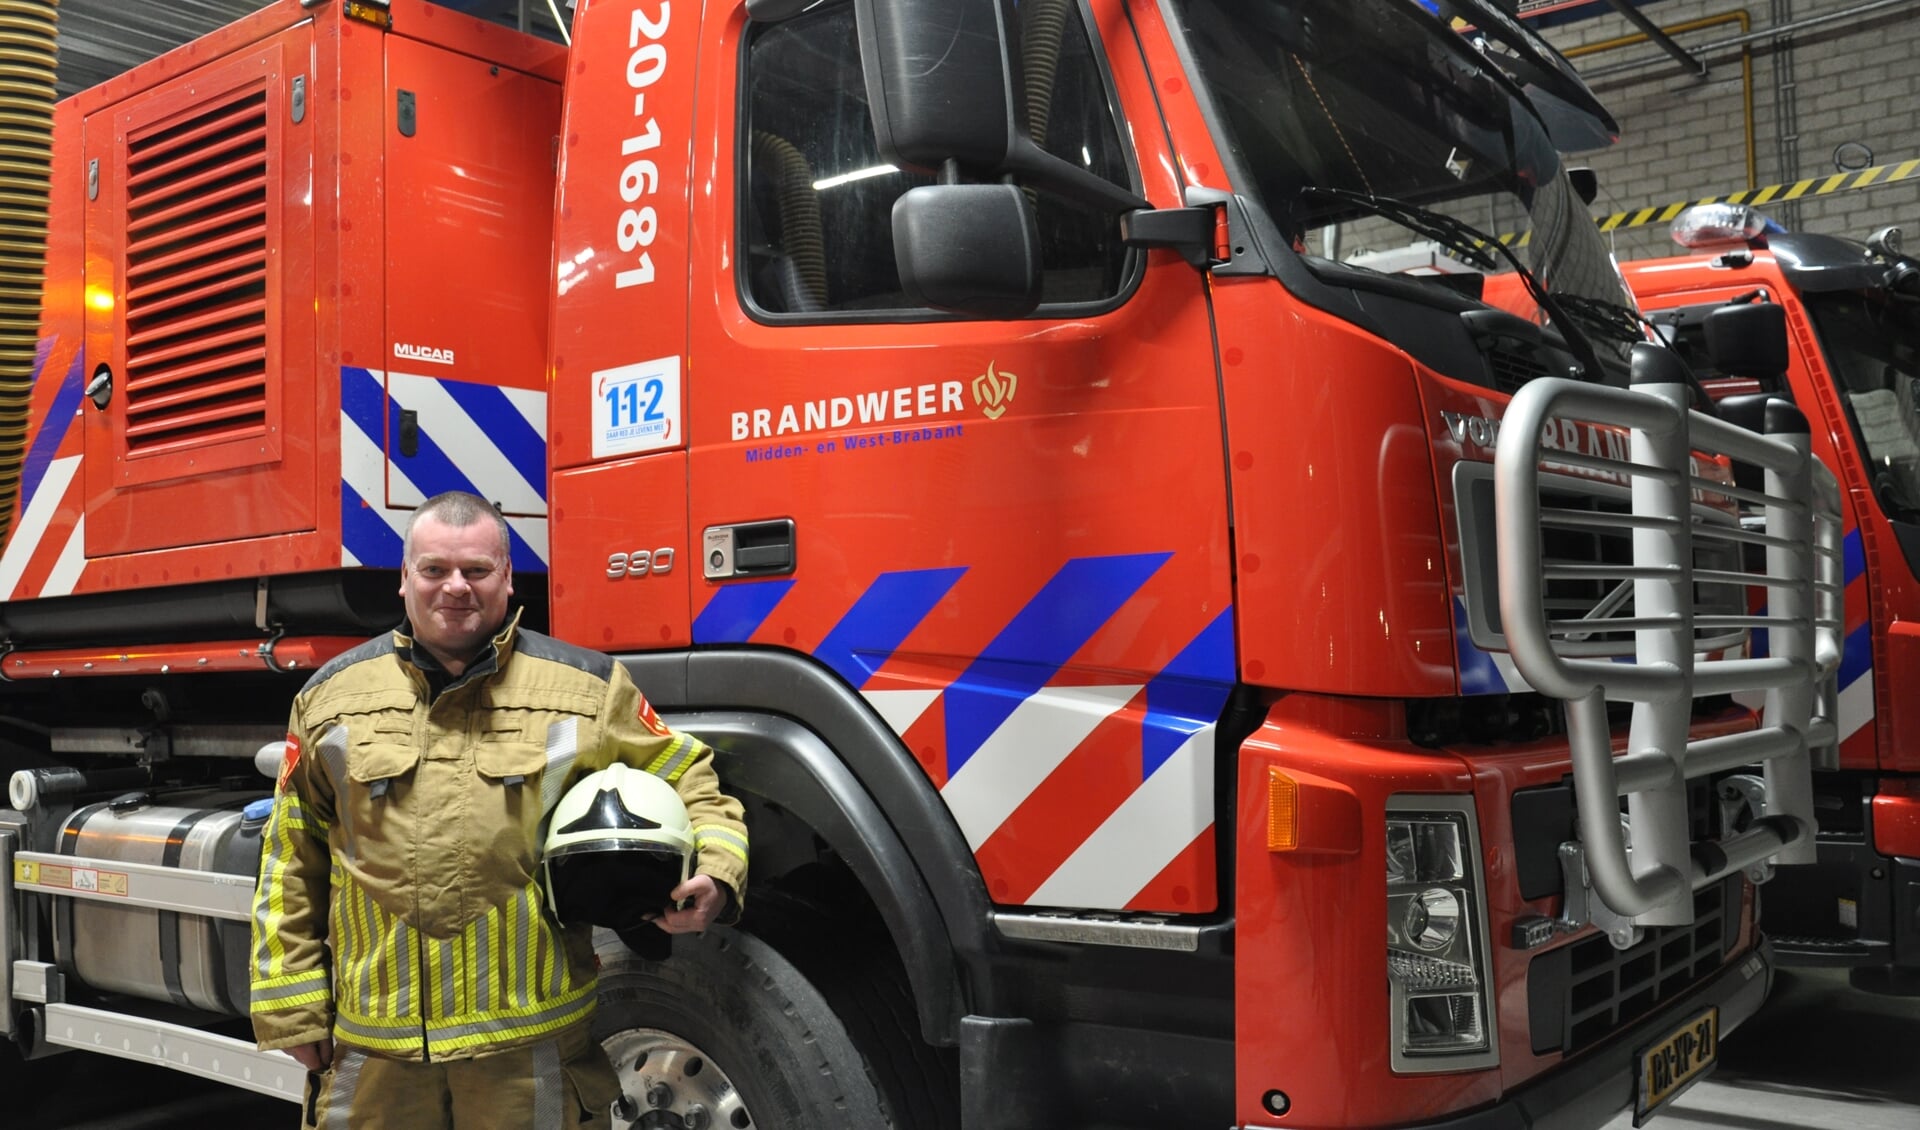 Danker Kouwen, brandweervrijwilliger in Steenbergen: 'We hebben naast het uitrukken voor brand of ongevallen ook vaak veel plezier' 